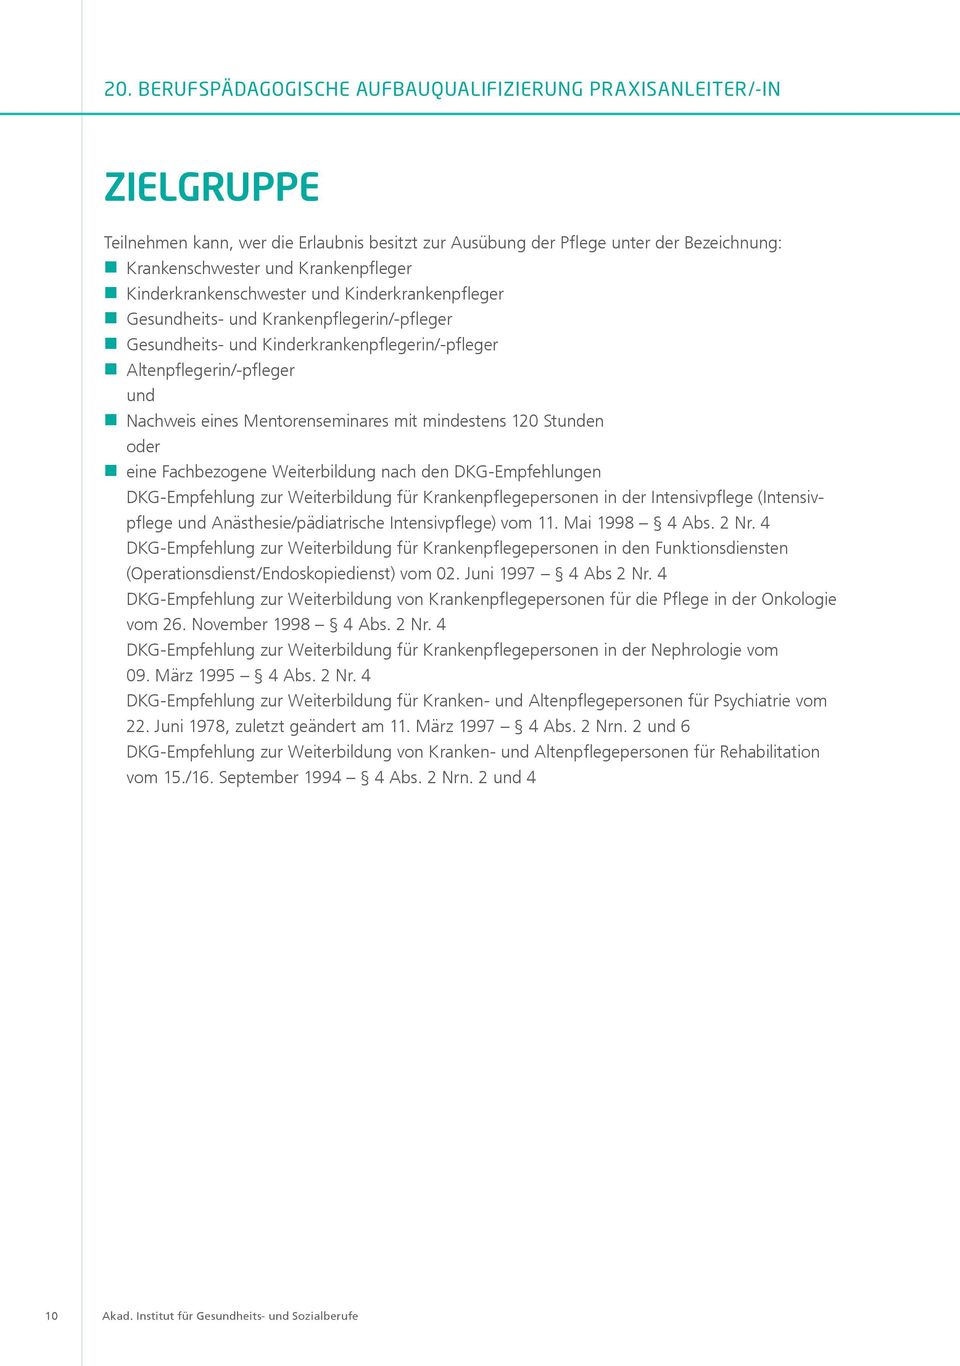 Weiterbildung nach den DKG-Empfehlungen DKG-Empfehlung zur Weiterbildung für Krankenpflegepersonen in der Intensivpflege (Intensivpflege und Anästhesie/pädiatrische Intensivpflege) vom 11.